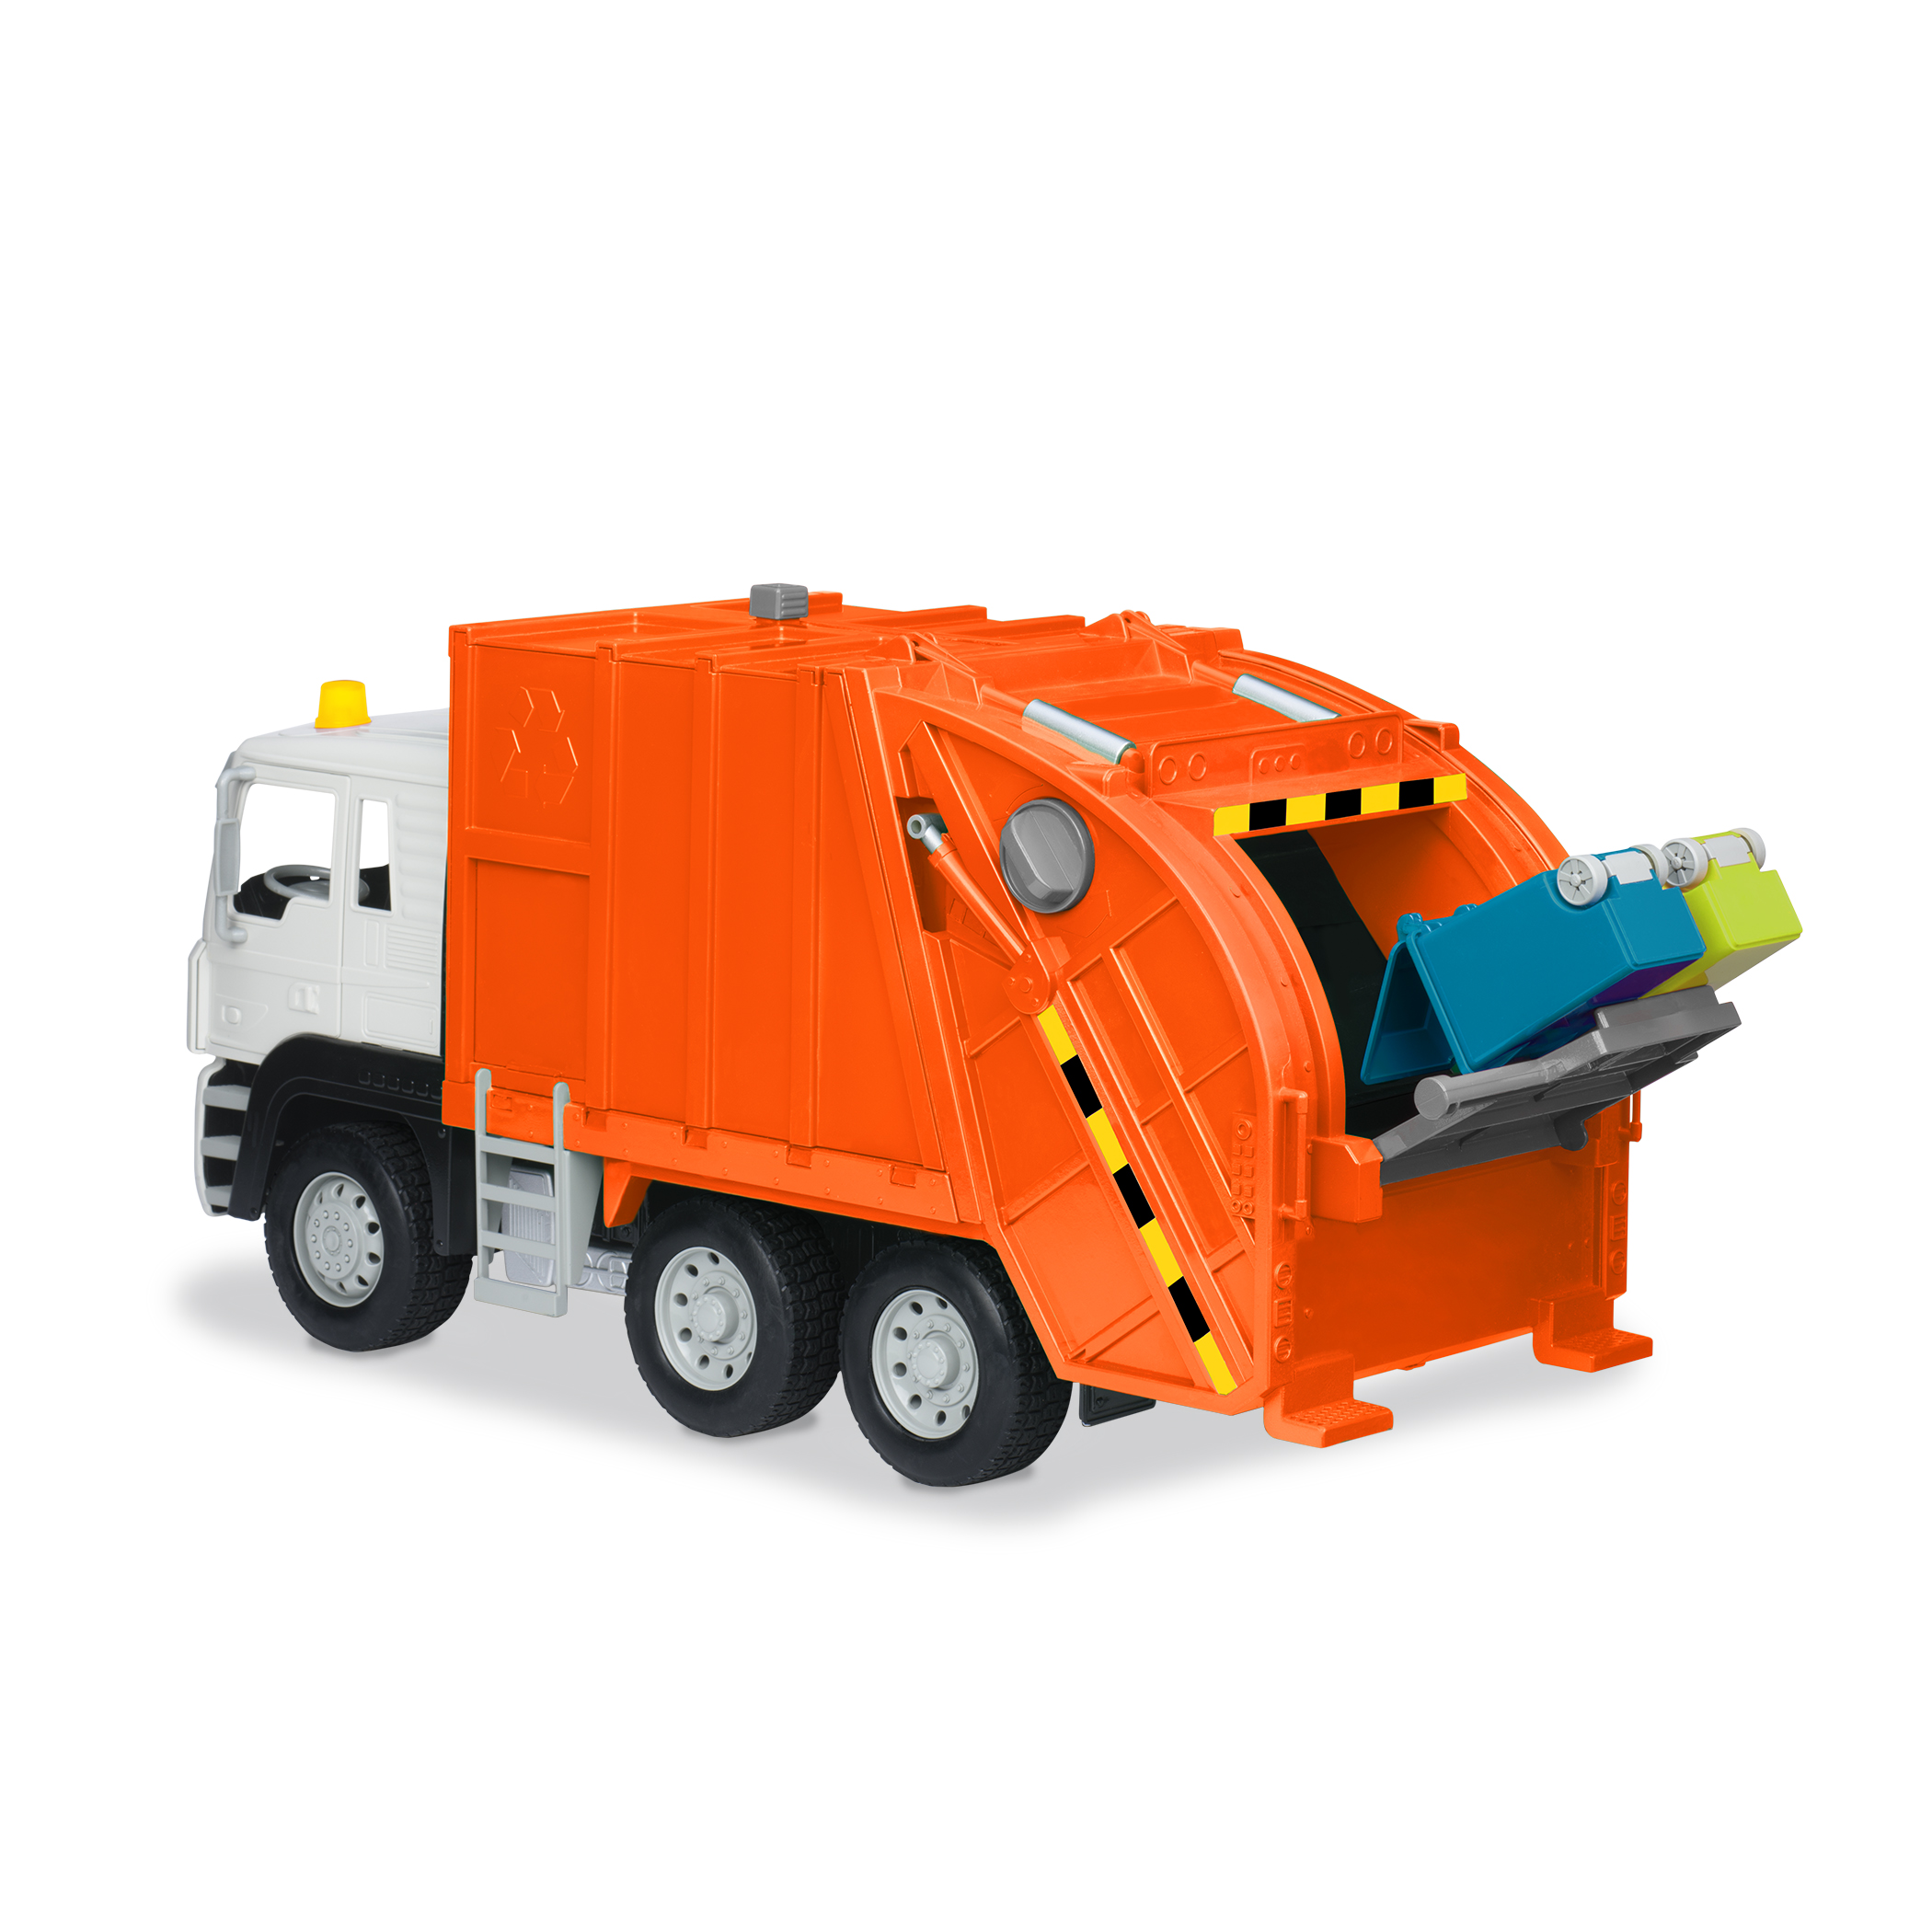 WADER Basics-Series Spielzeug Müllwagen Fahrzeug Müllauto 19cm mit Mülleimer 